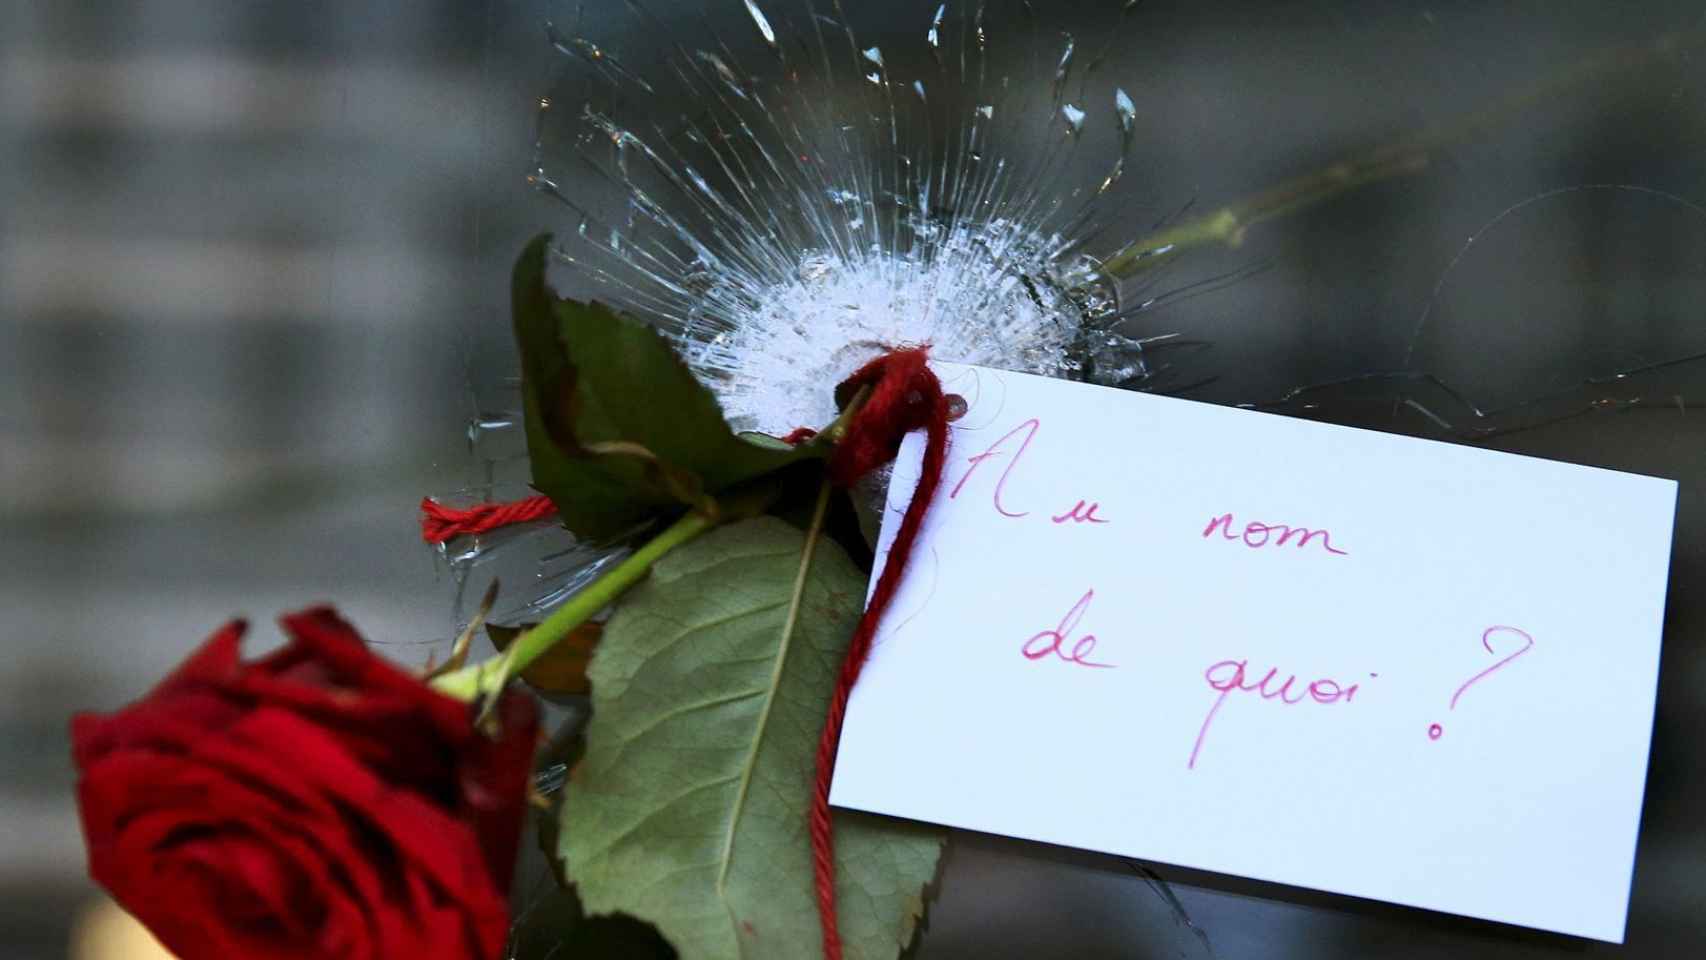 En nombre de quién, plantea esta nota junto a una rosa en uno de los lugares atacados el 13-N.